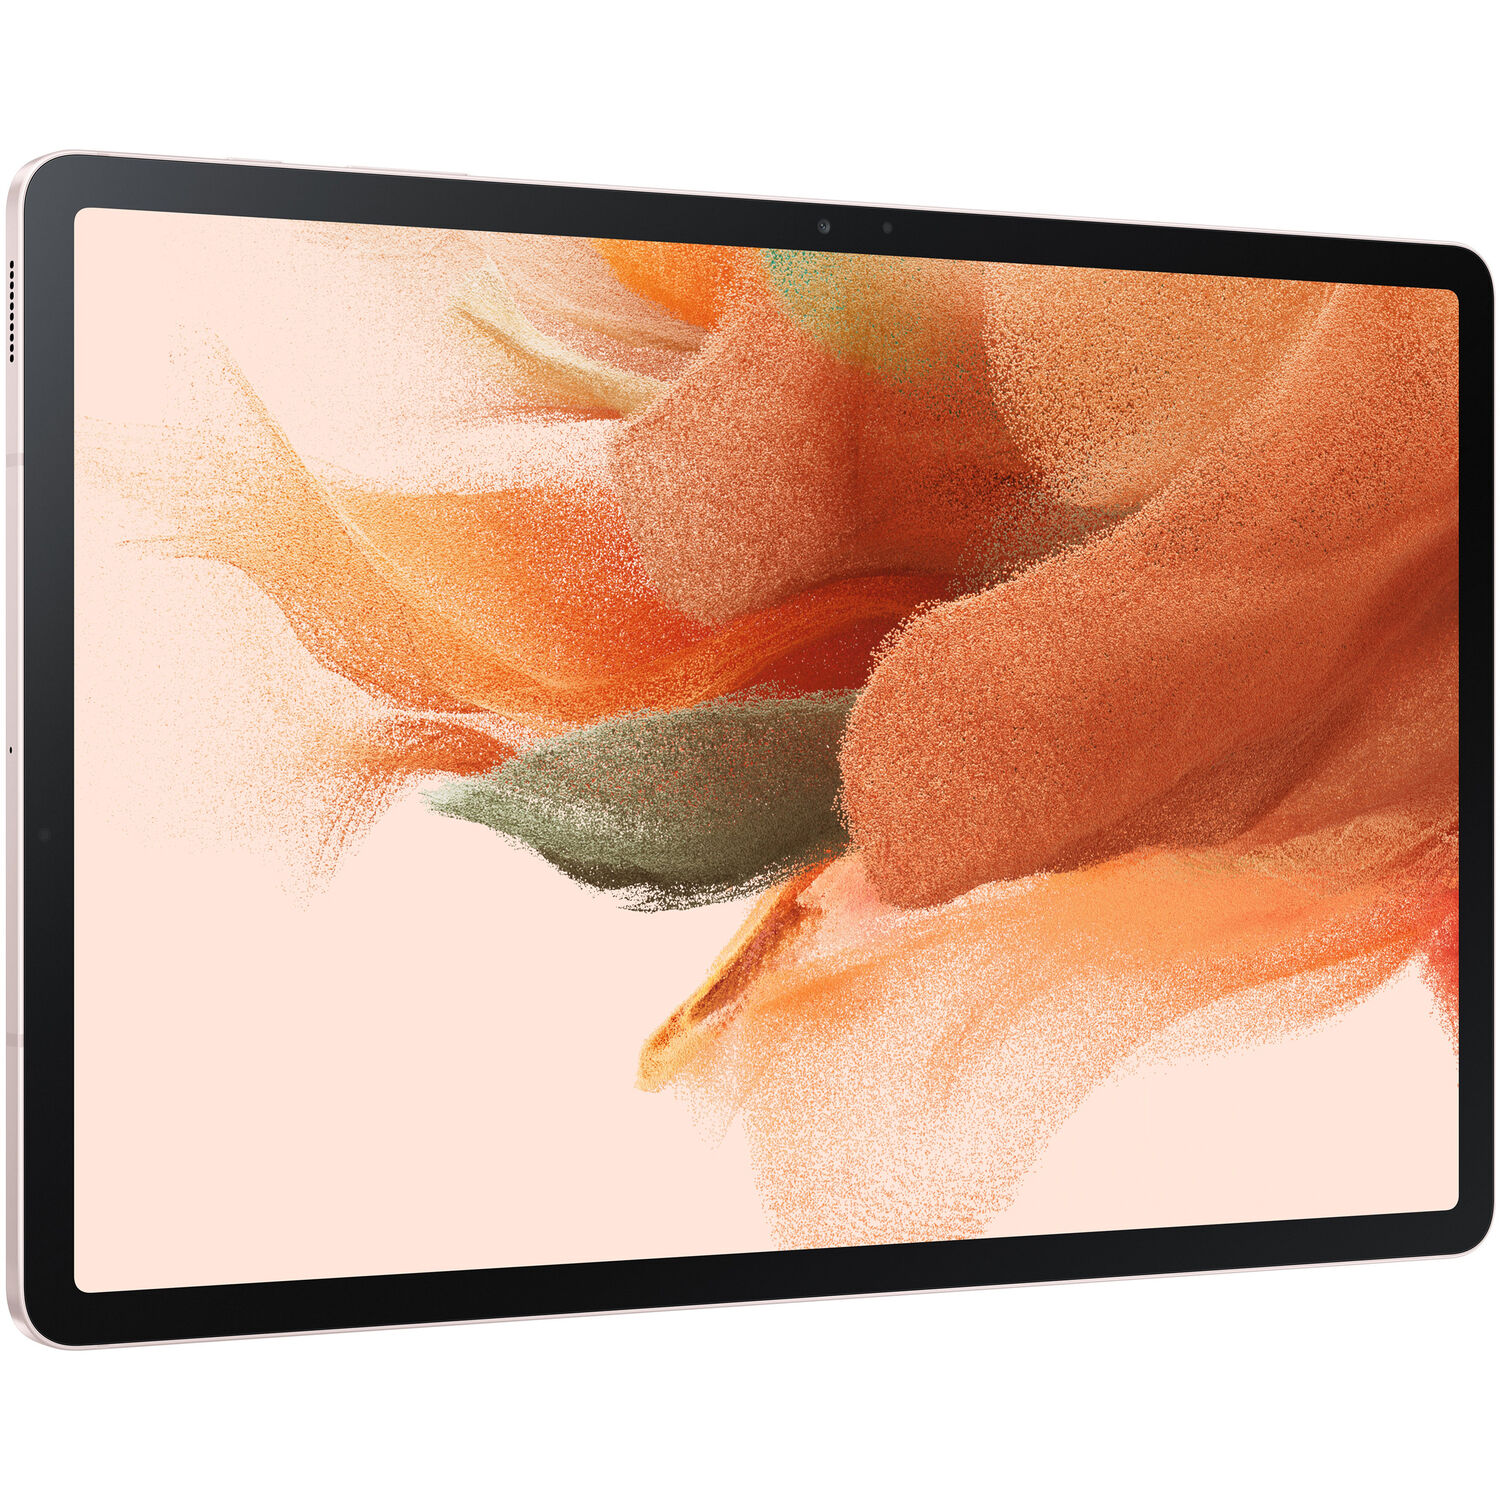 Tablet Samsung Galaxy Tab S7 Fe 64Gb 12.4 Solo Wi Fi Rosa Místico